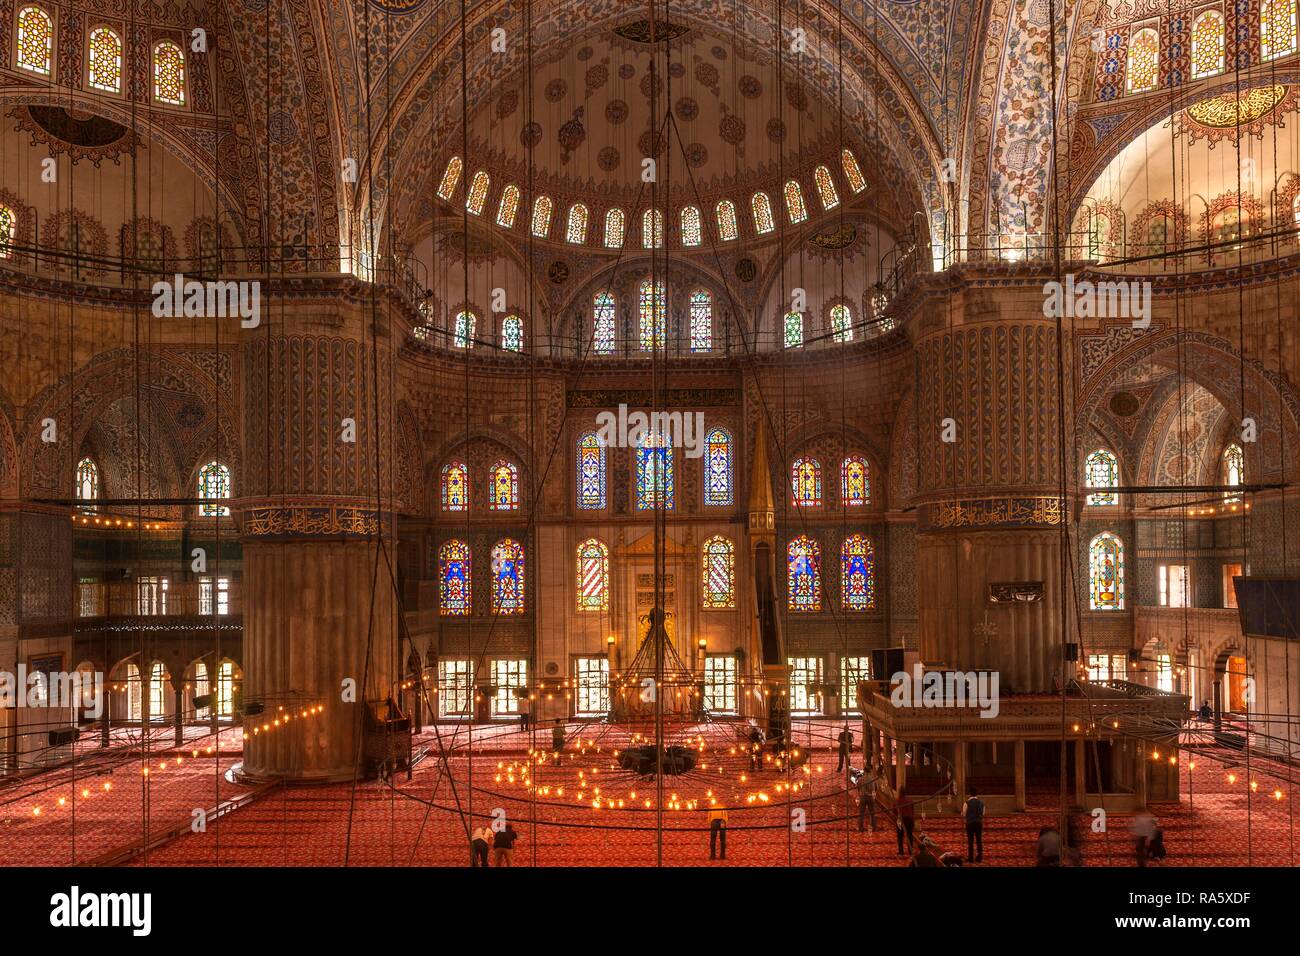 Sultan Ahmed Moschee oder Blaue Moschee, Istanbul, Türkei Stockfoto